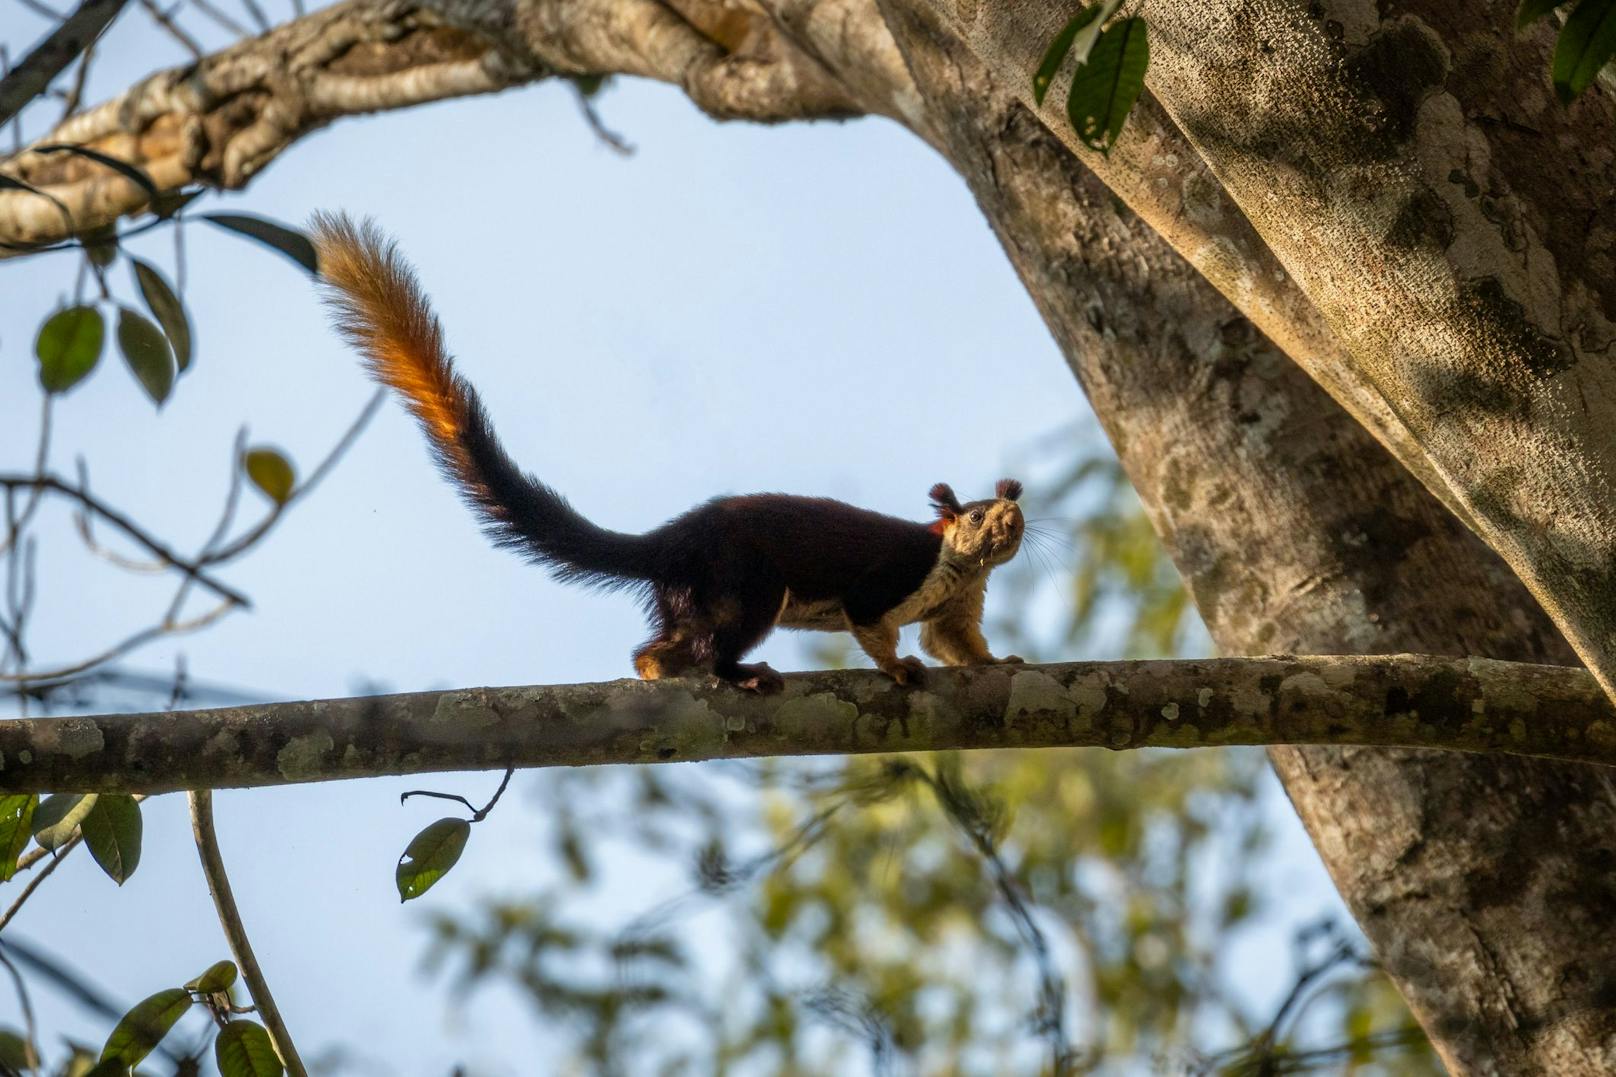 Obwohl das Königsriesenhörnchen noch ziemlich häufig anzutreffen ist, befürchten Experten einen drastischen Rückgang aufgrund der Verkleinerung ihrer Lebensräume.